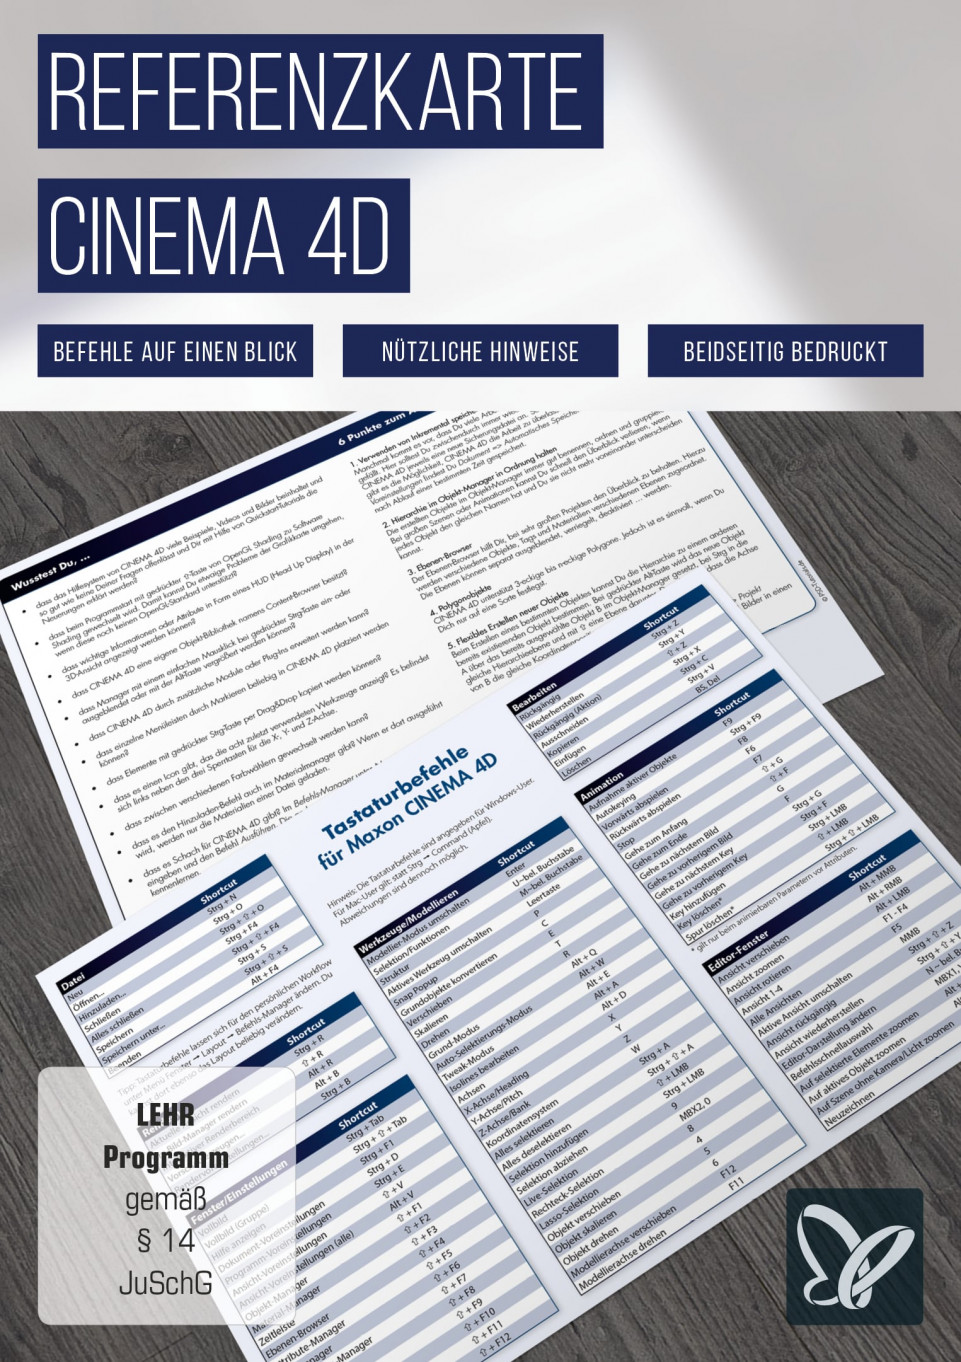 Referenzkarte für CINEMA 4D